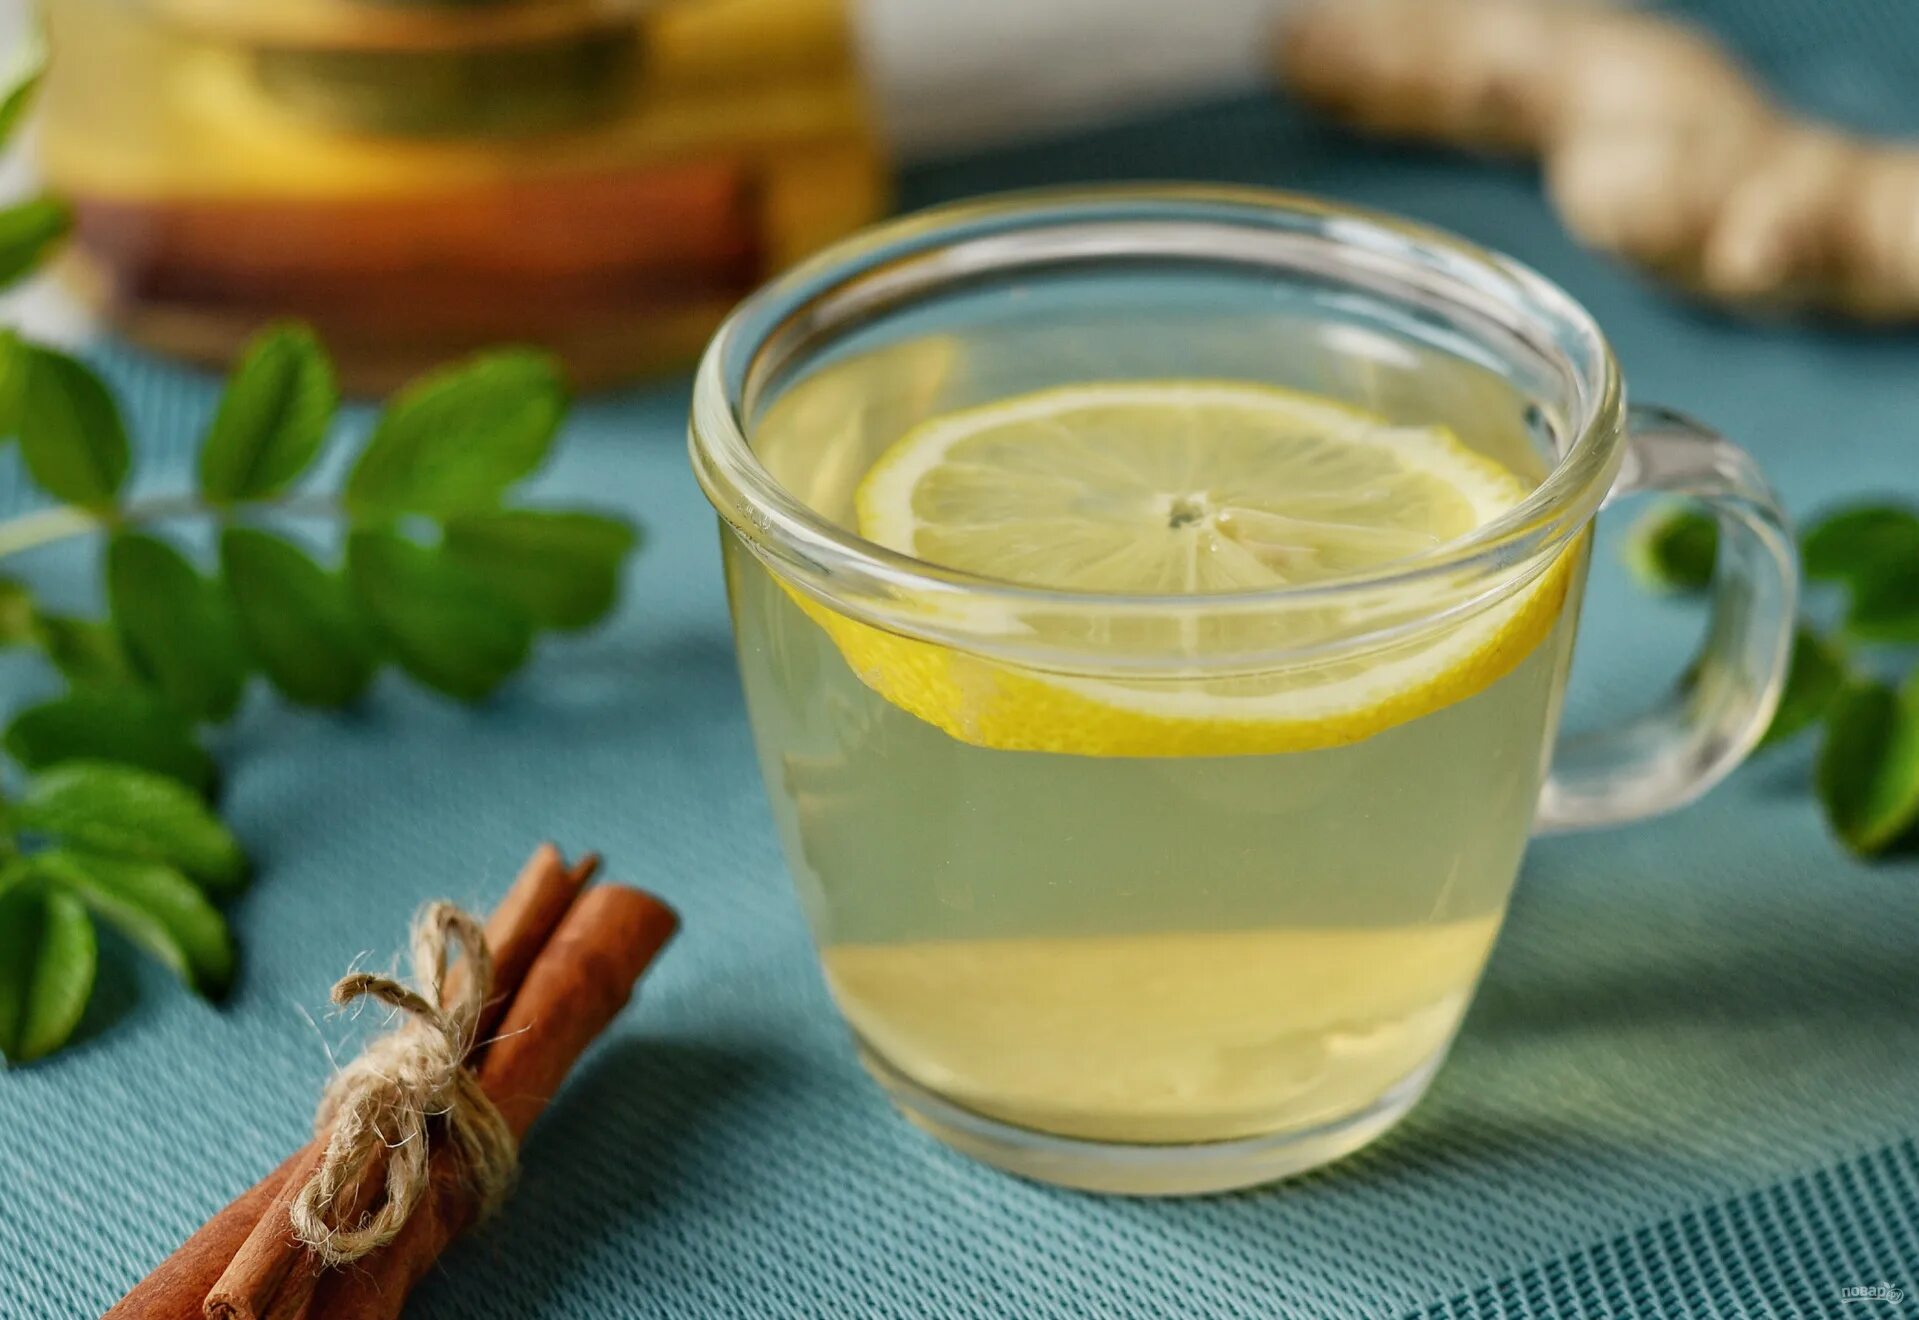 Медовая вода отзывы. Зеленый чай. Имбирный чай. Зеленый чай с лимоном. Чай с лимоном и имбирем.